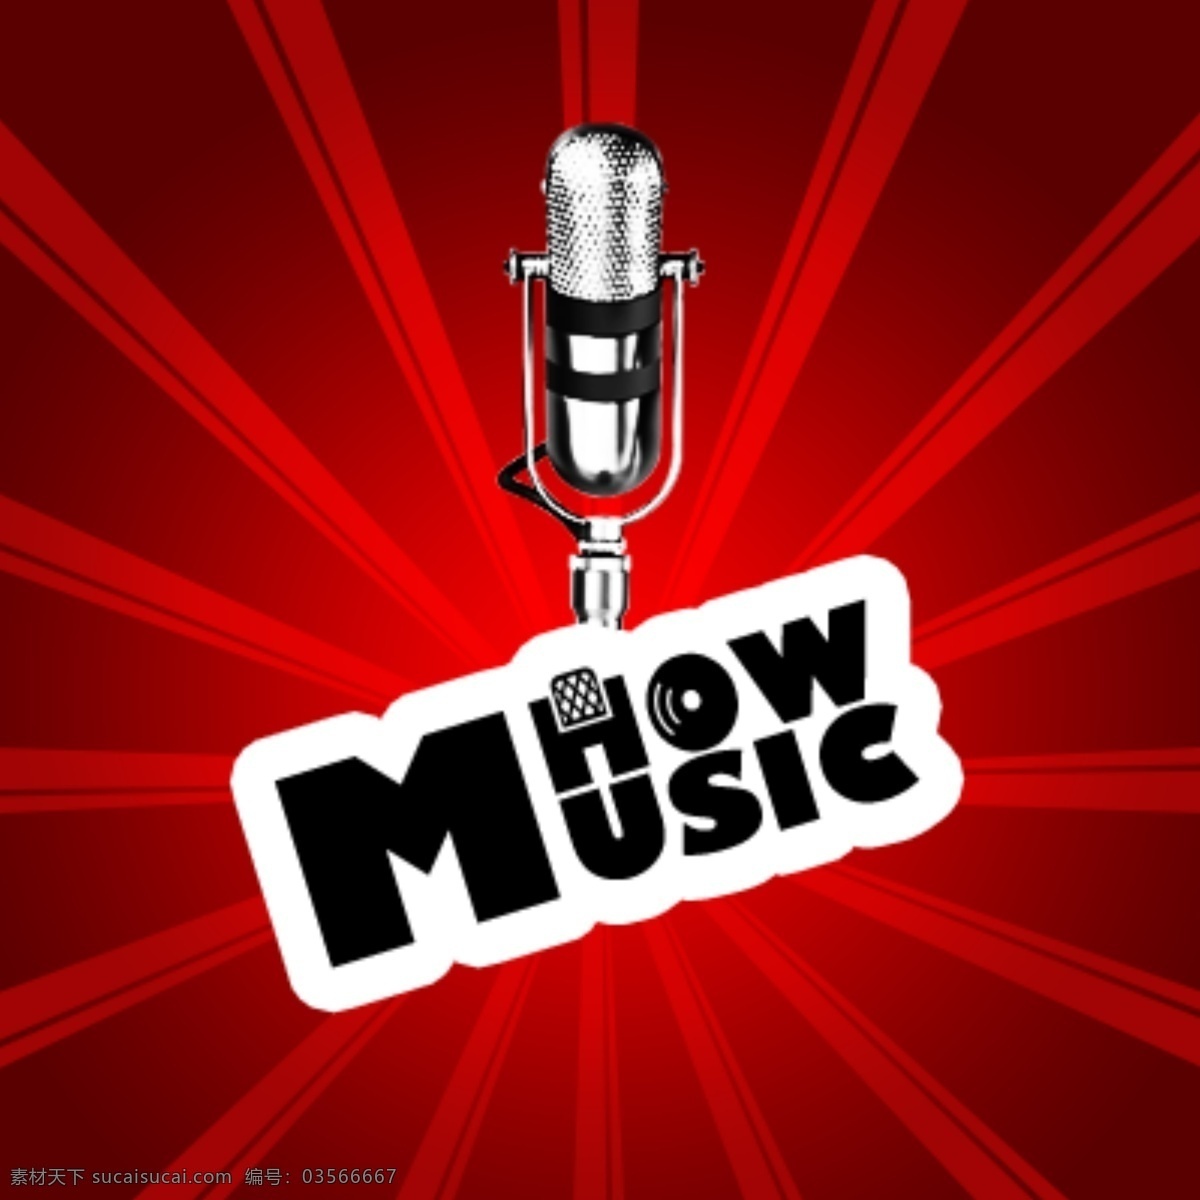 音乐 电台 howmusic 节目 logo 红色背景 麦克风 音乐节目 电台logo 原创设计 其他原创设计